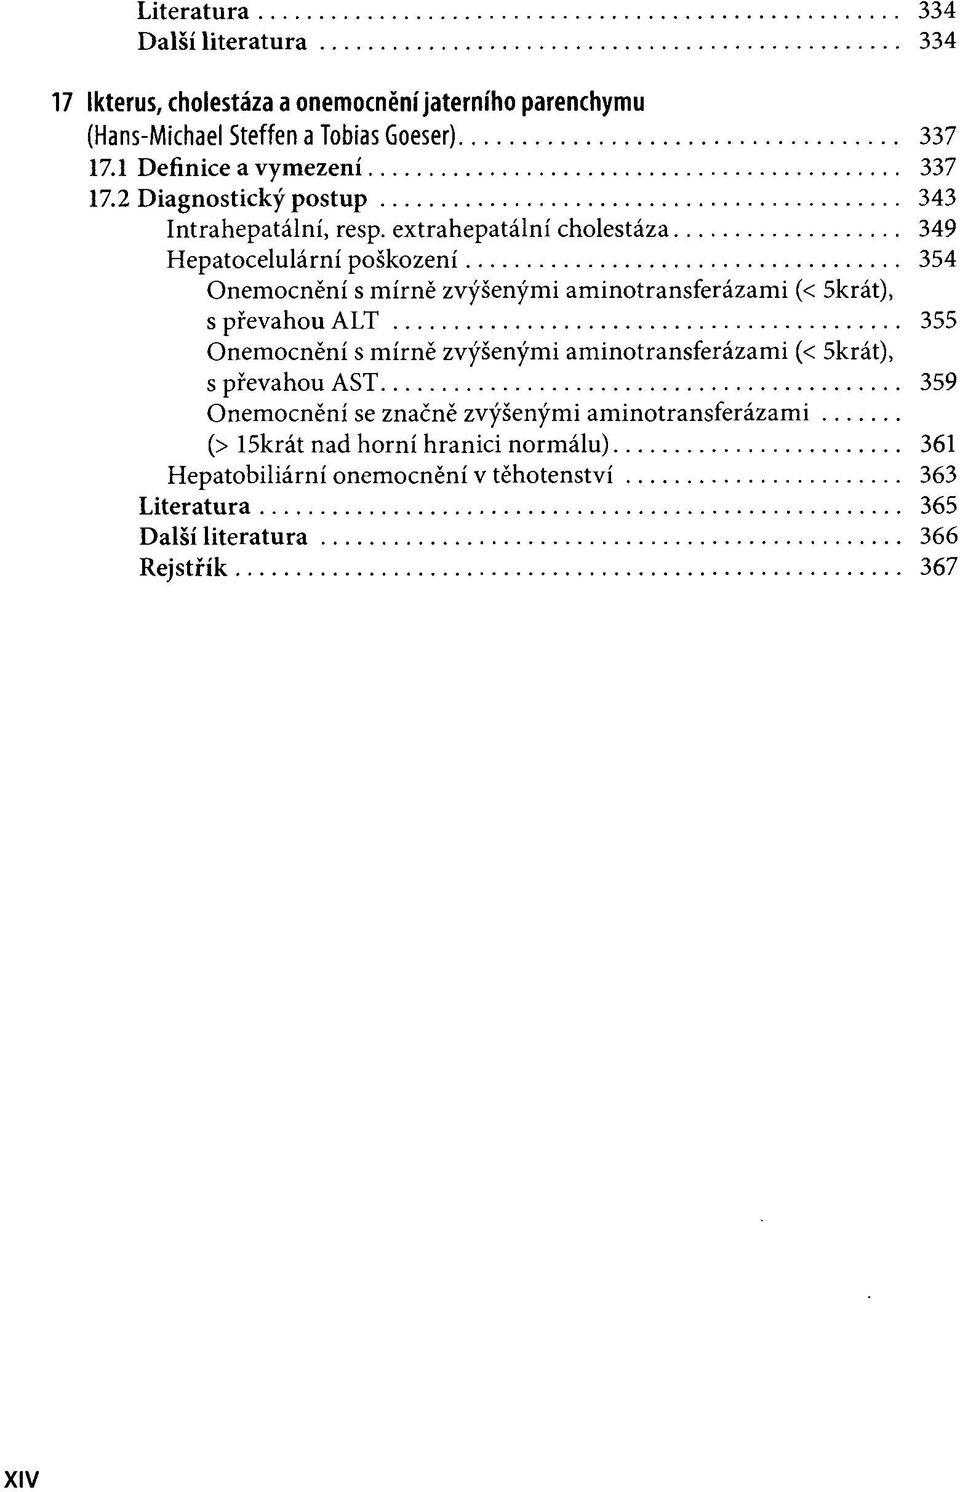 extrahepatální cholestáza 349 Hepatocelulární poškození 354 Onemocnění s mírně zvýšenými aminotransferázami (< 5krát), s převahou ALT 355 Onemocnění s